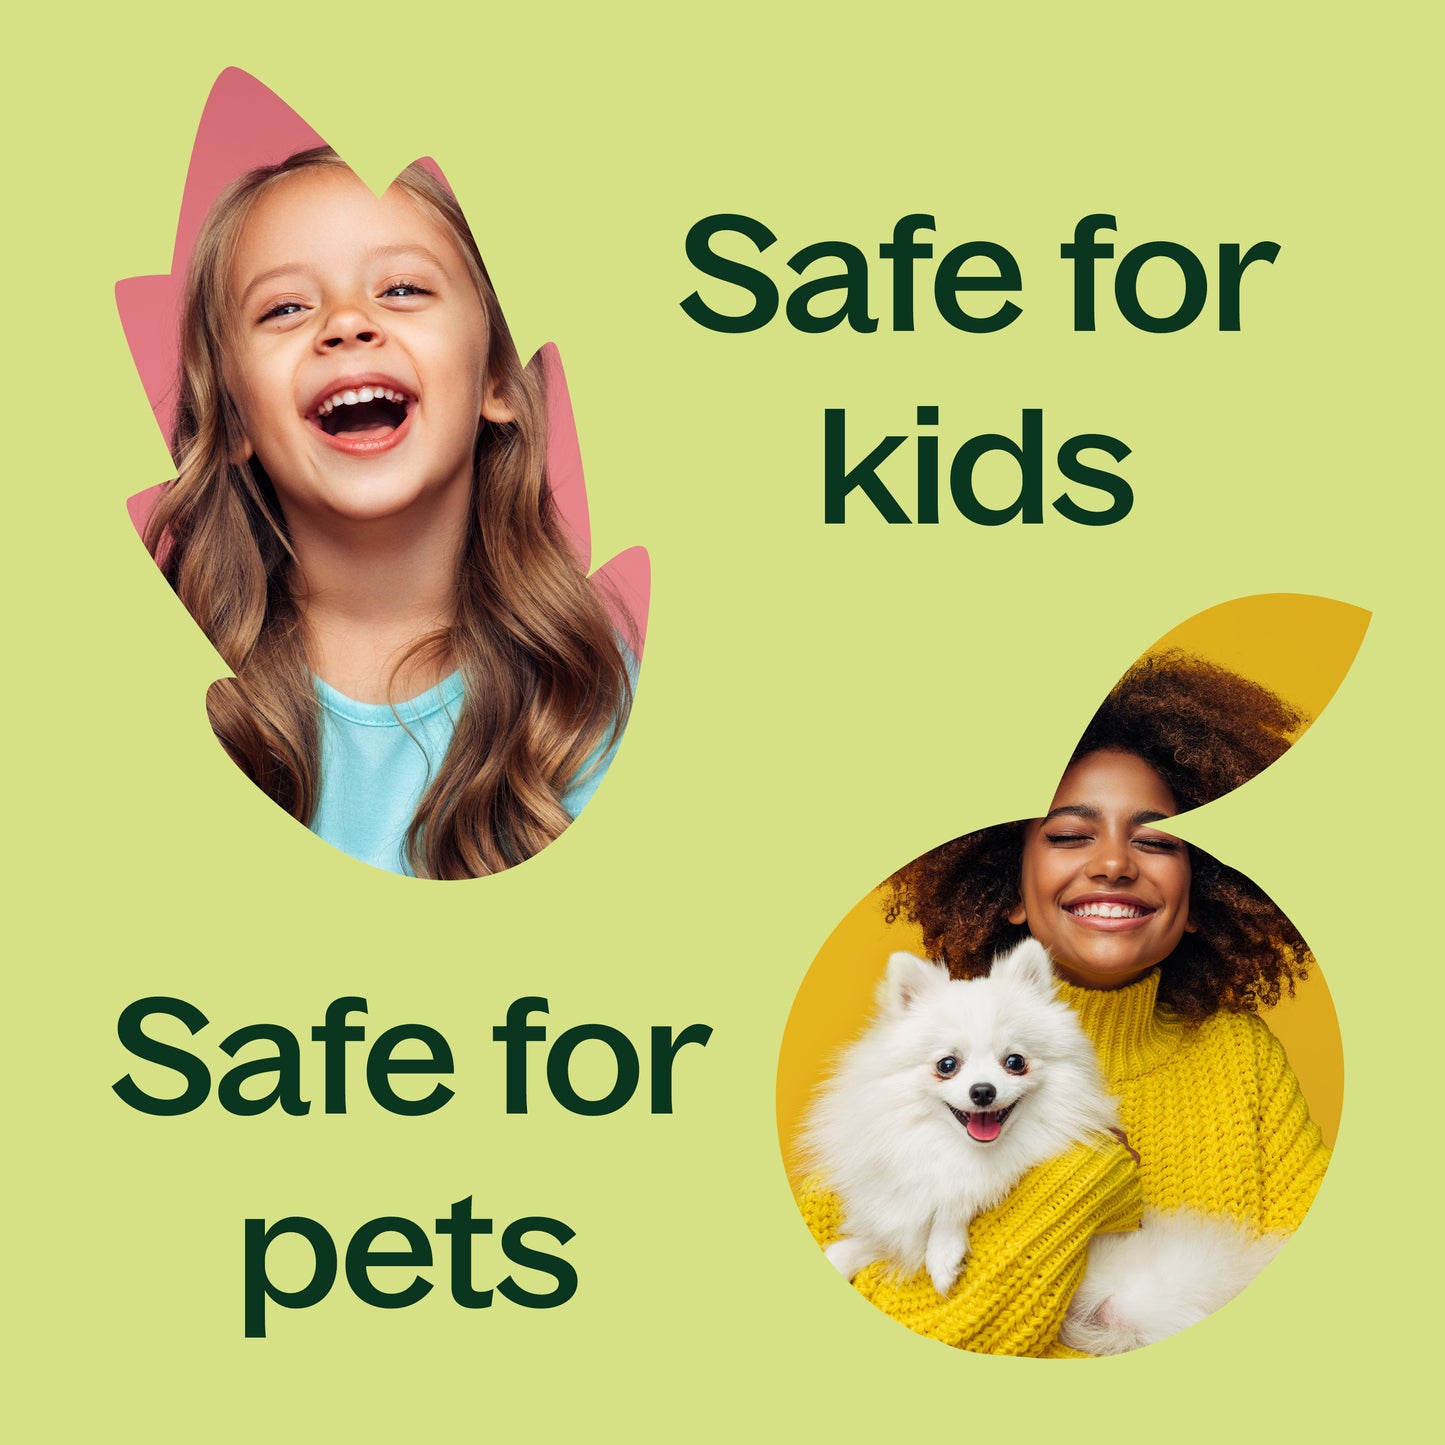 safe for kids, safe for pets